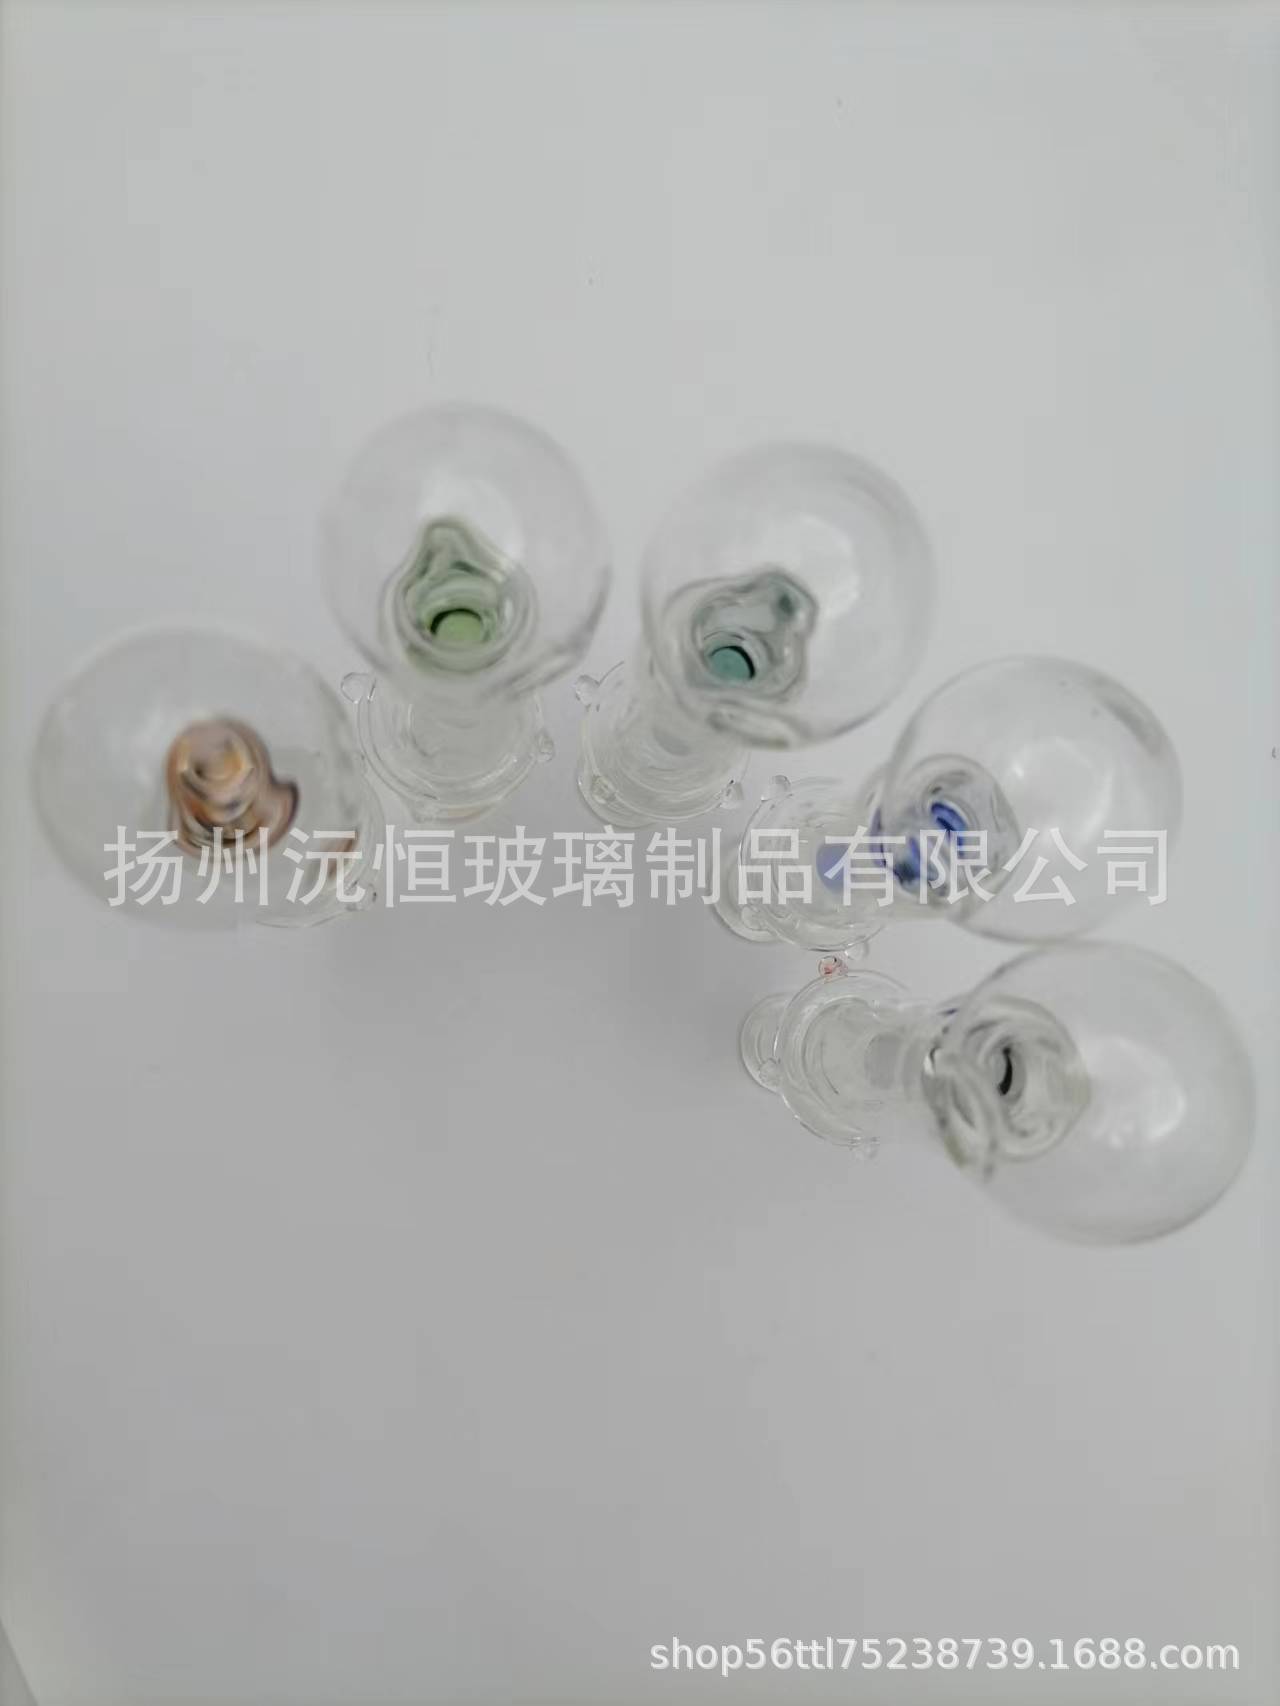 扬州沅恒玻璃制品有限公司